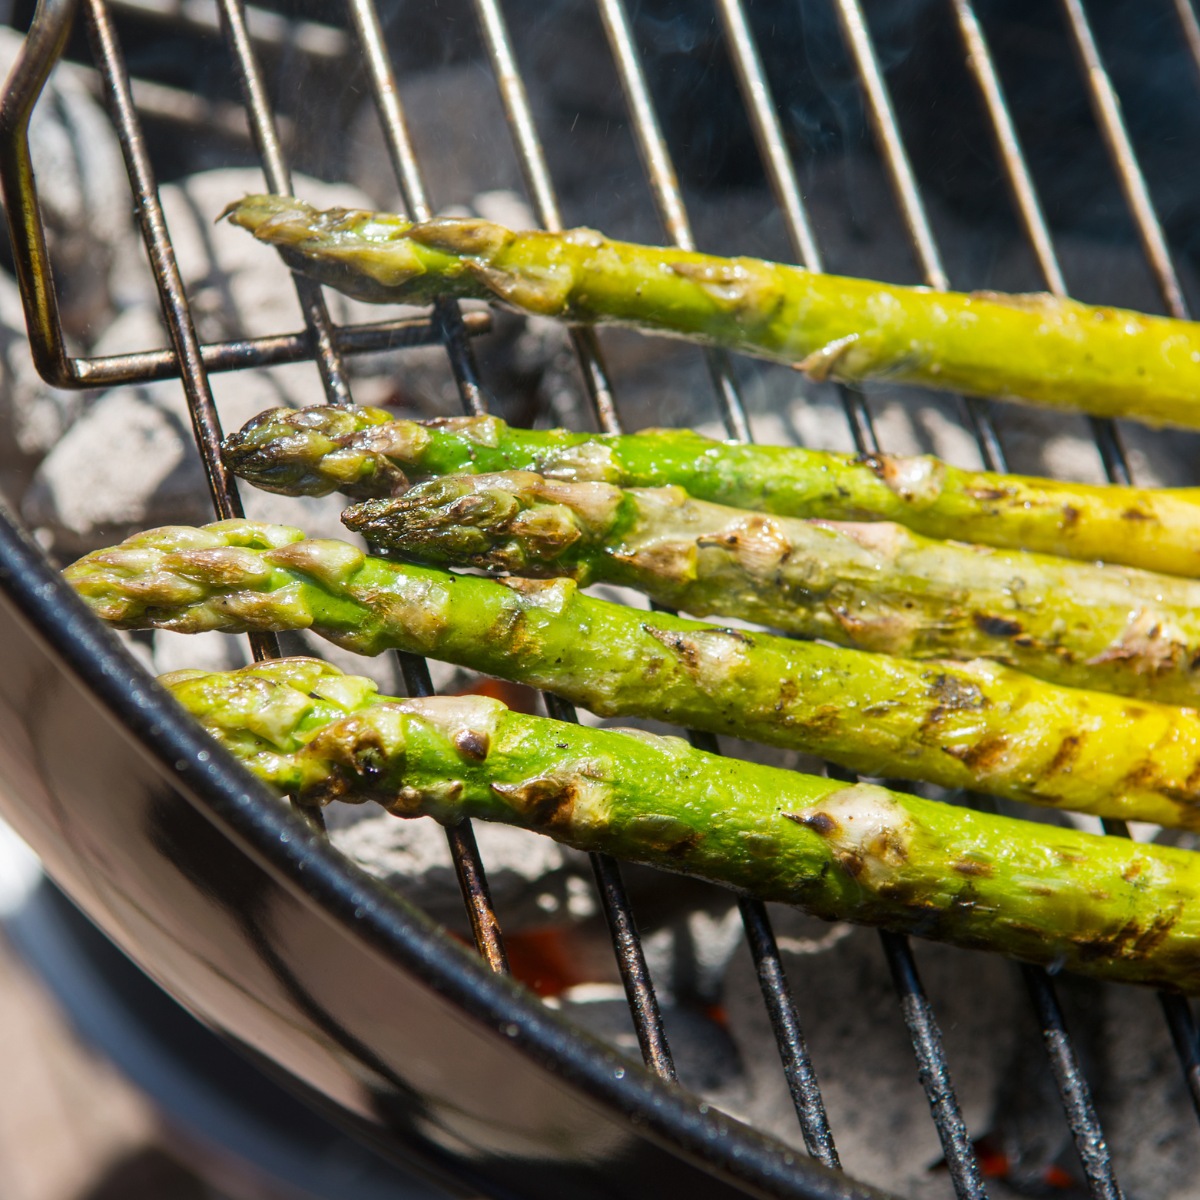 brisket sides grilled asparagus